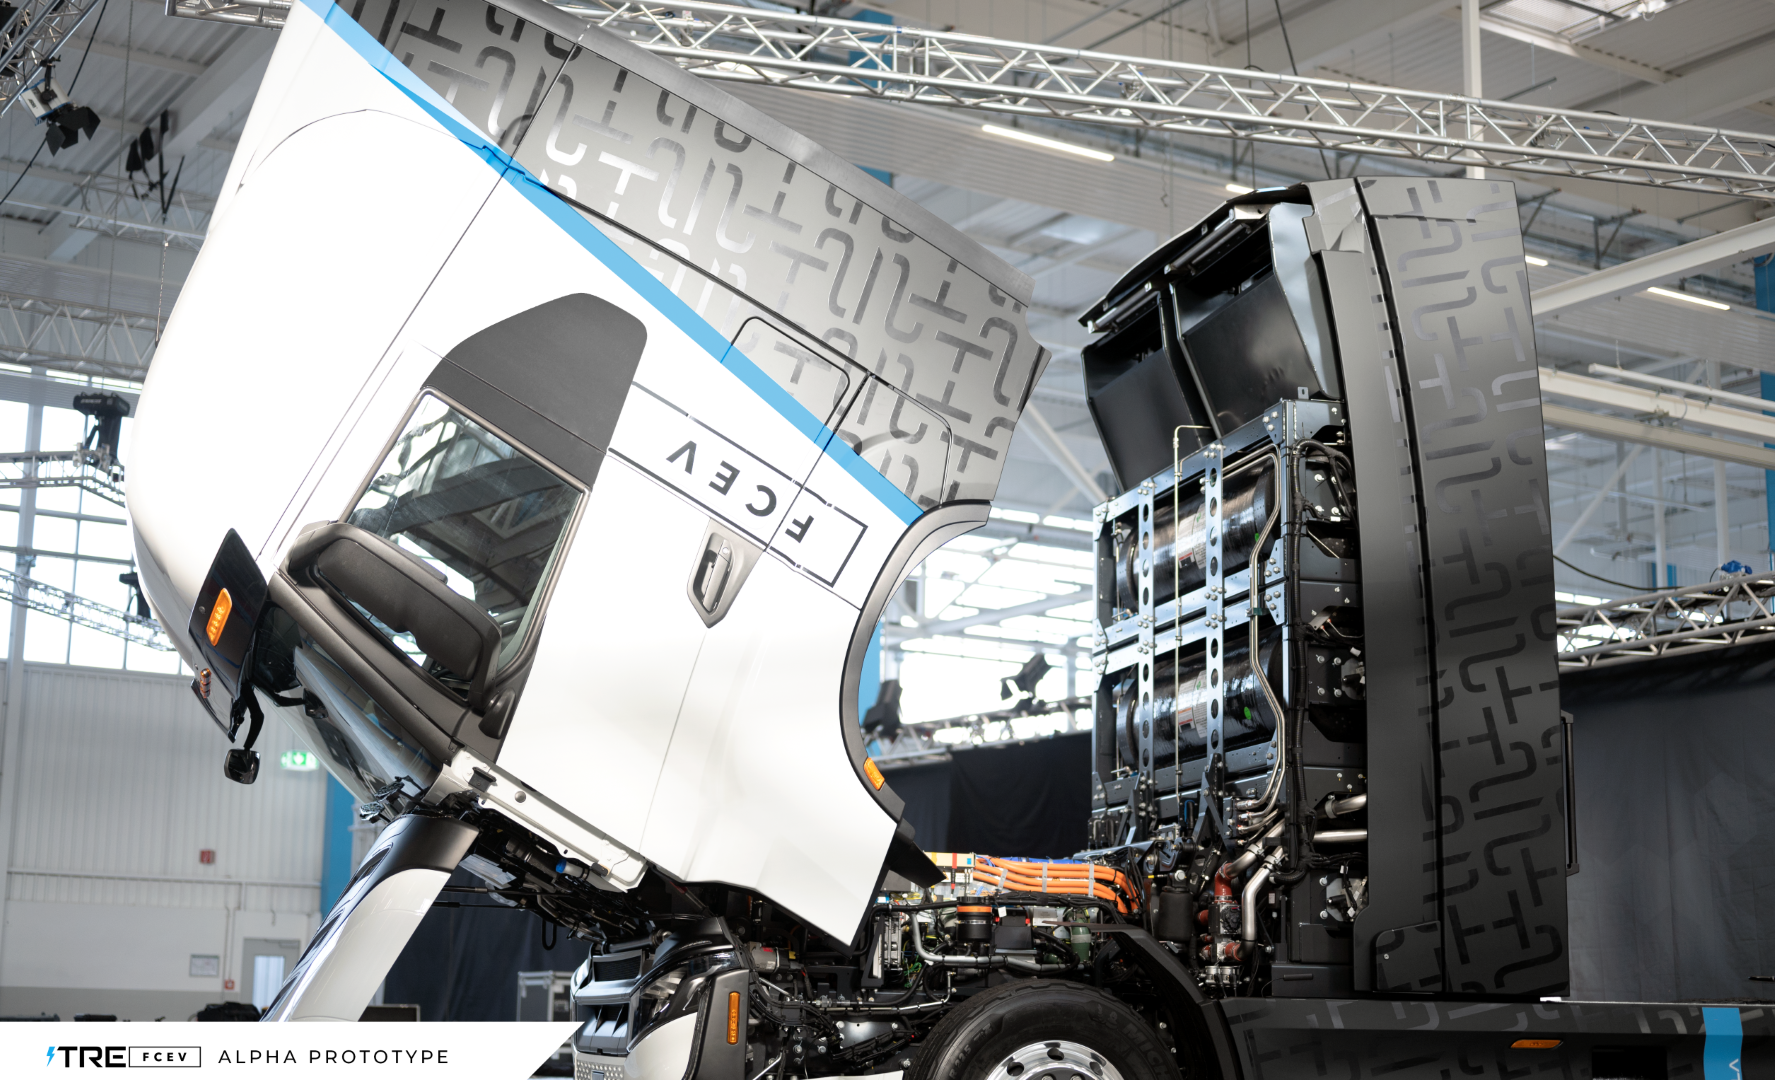 Fora do Brasil montadoras apostam pesado em caminhões movido a hidrogênio